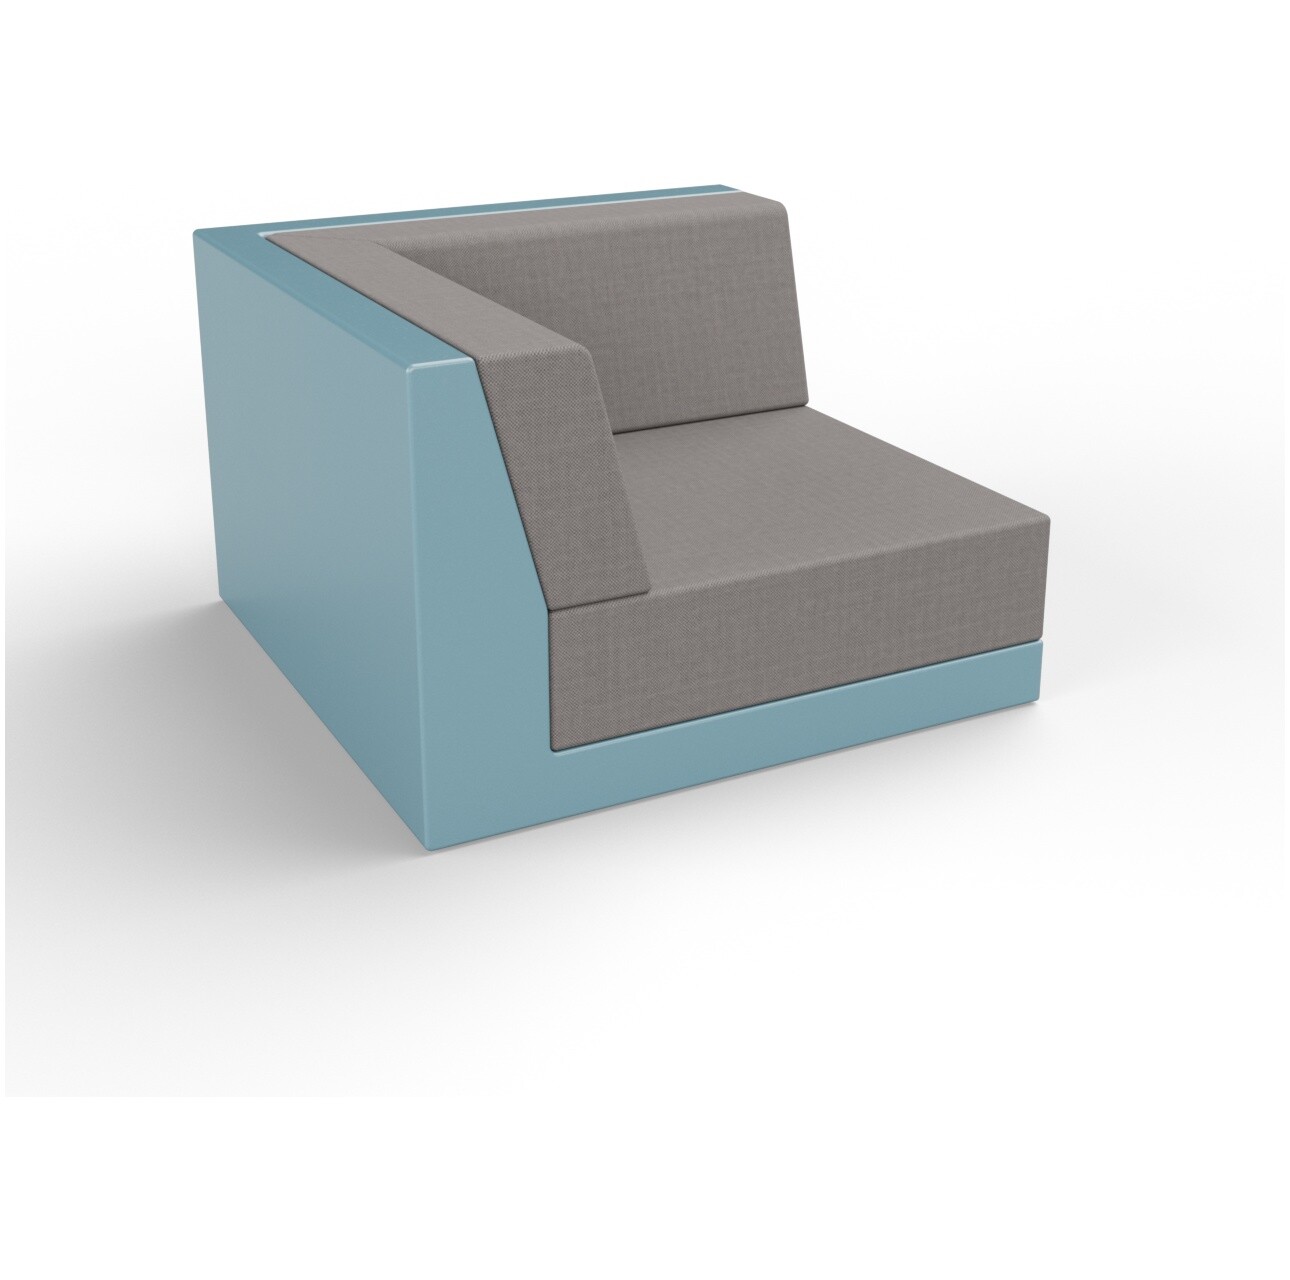 Модуль дивана угловой пластиковый с подушками бирюзовый, графитовый Quarter modular